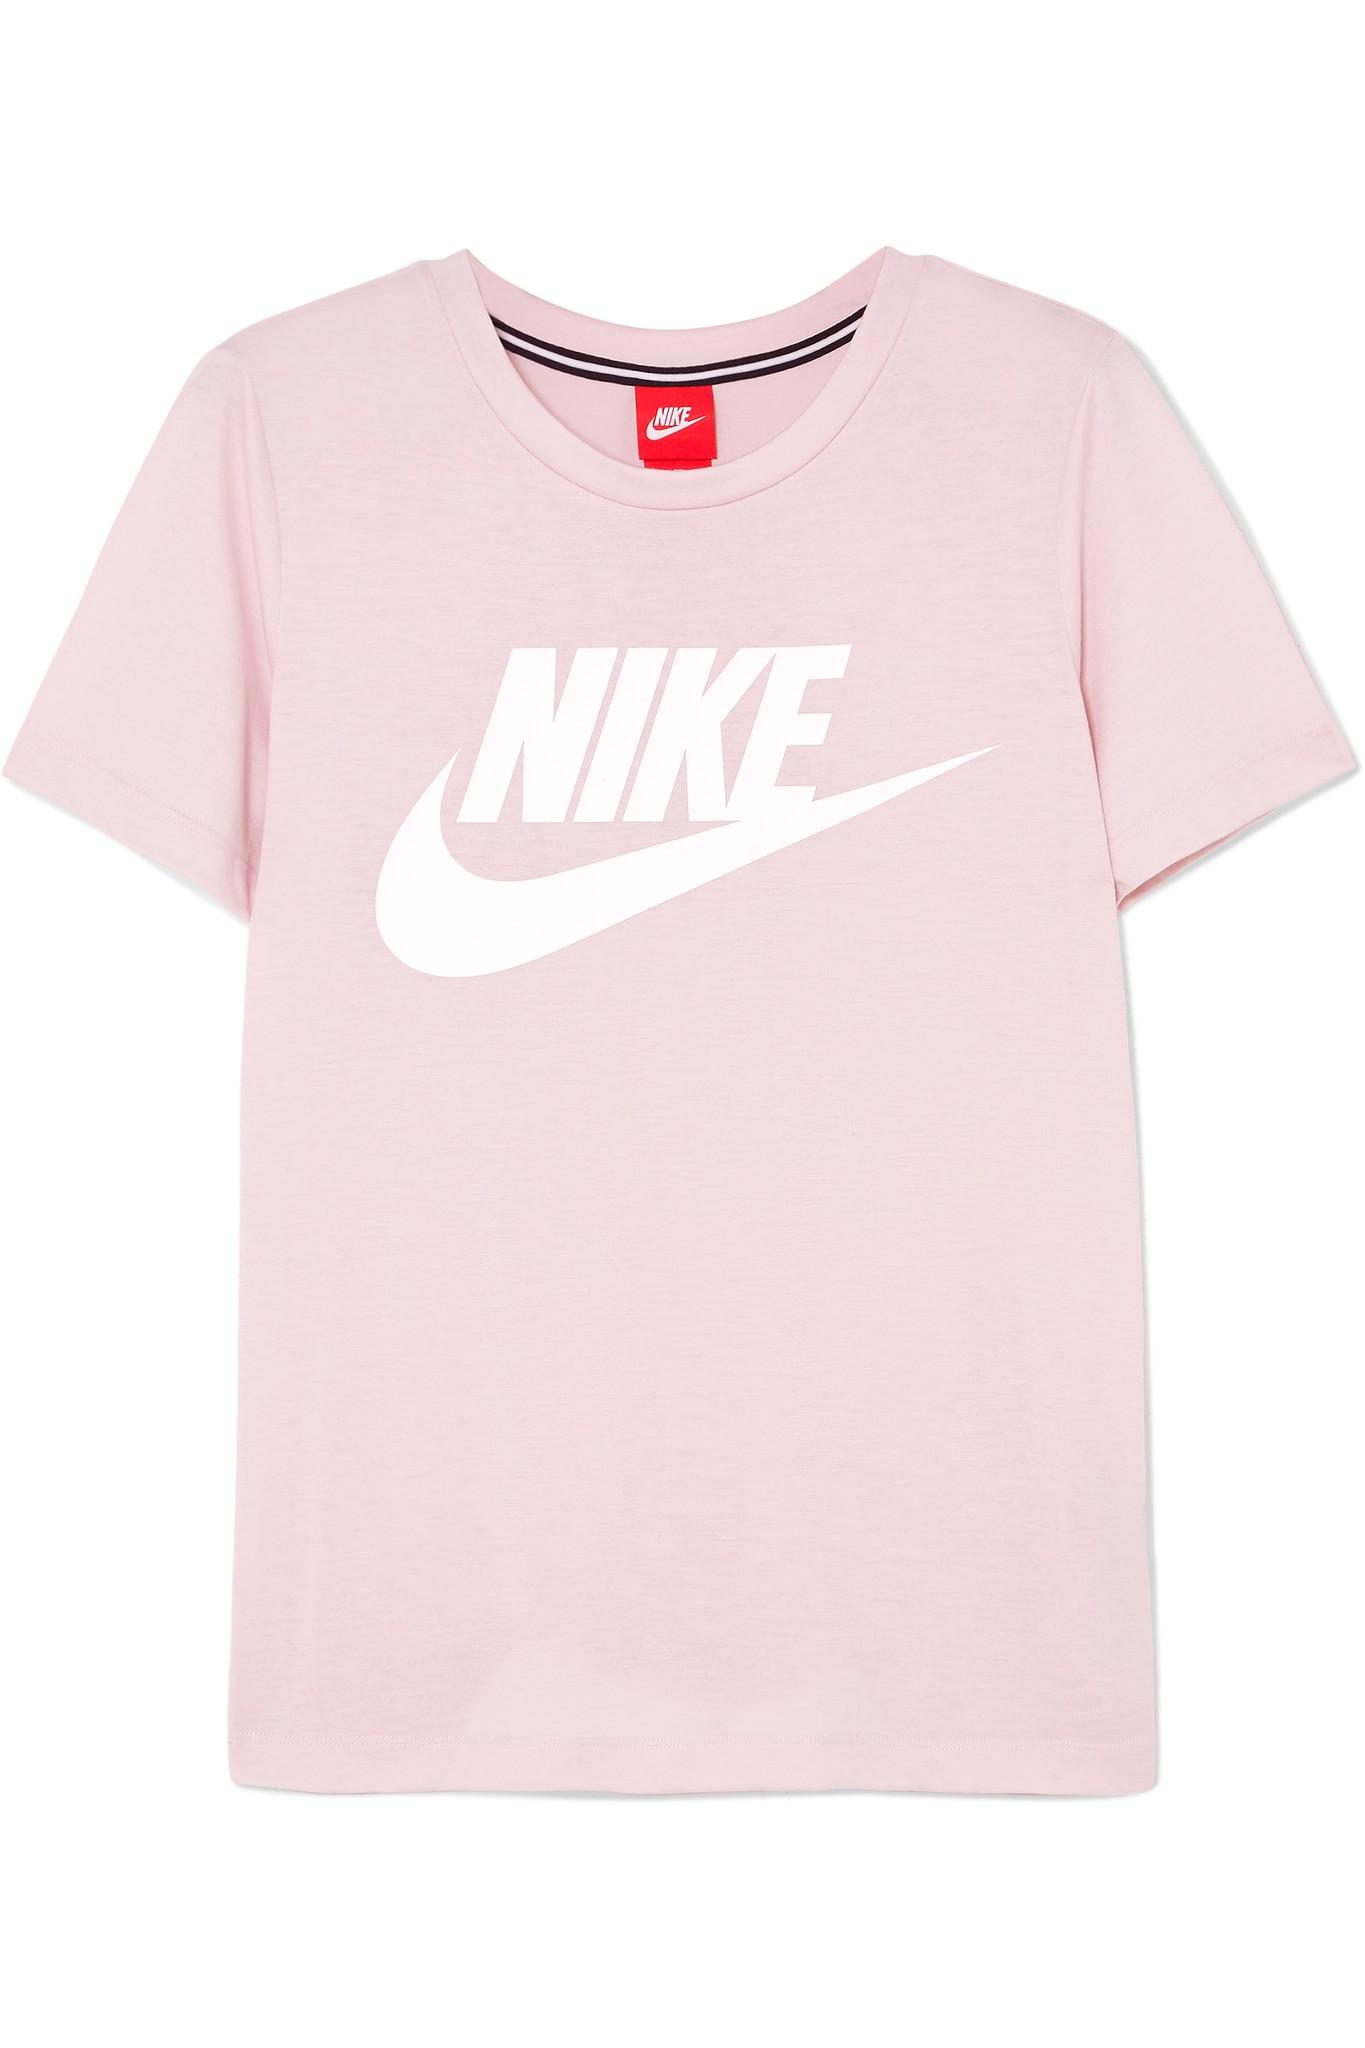 pink shirt nike